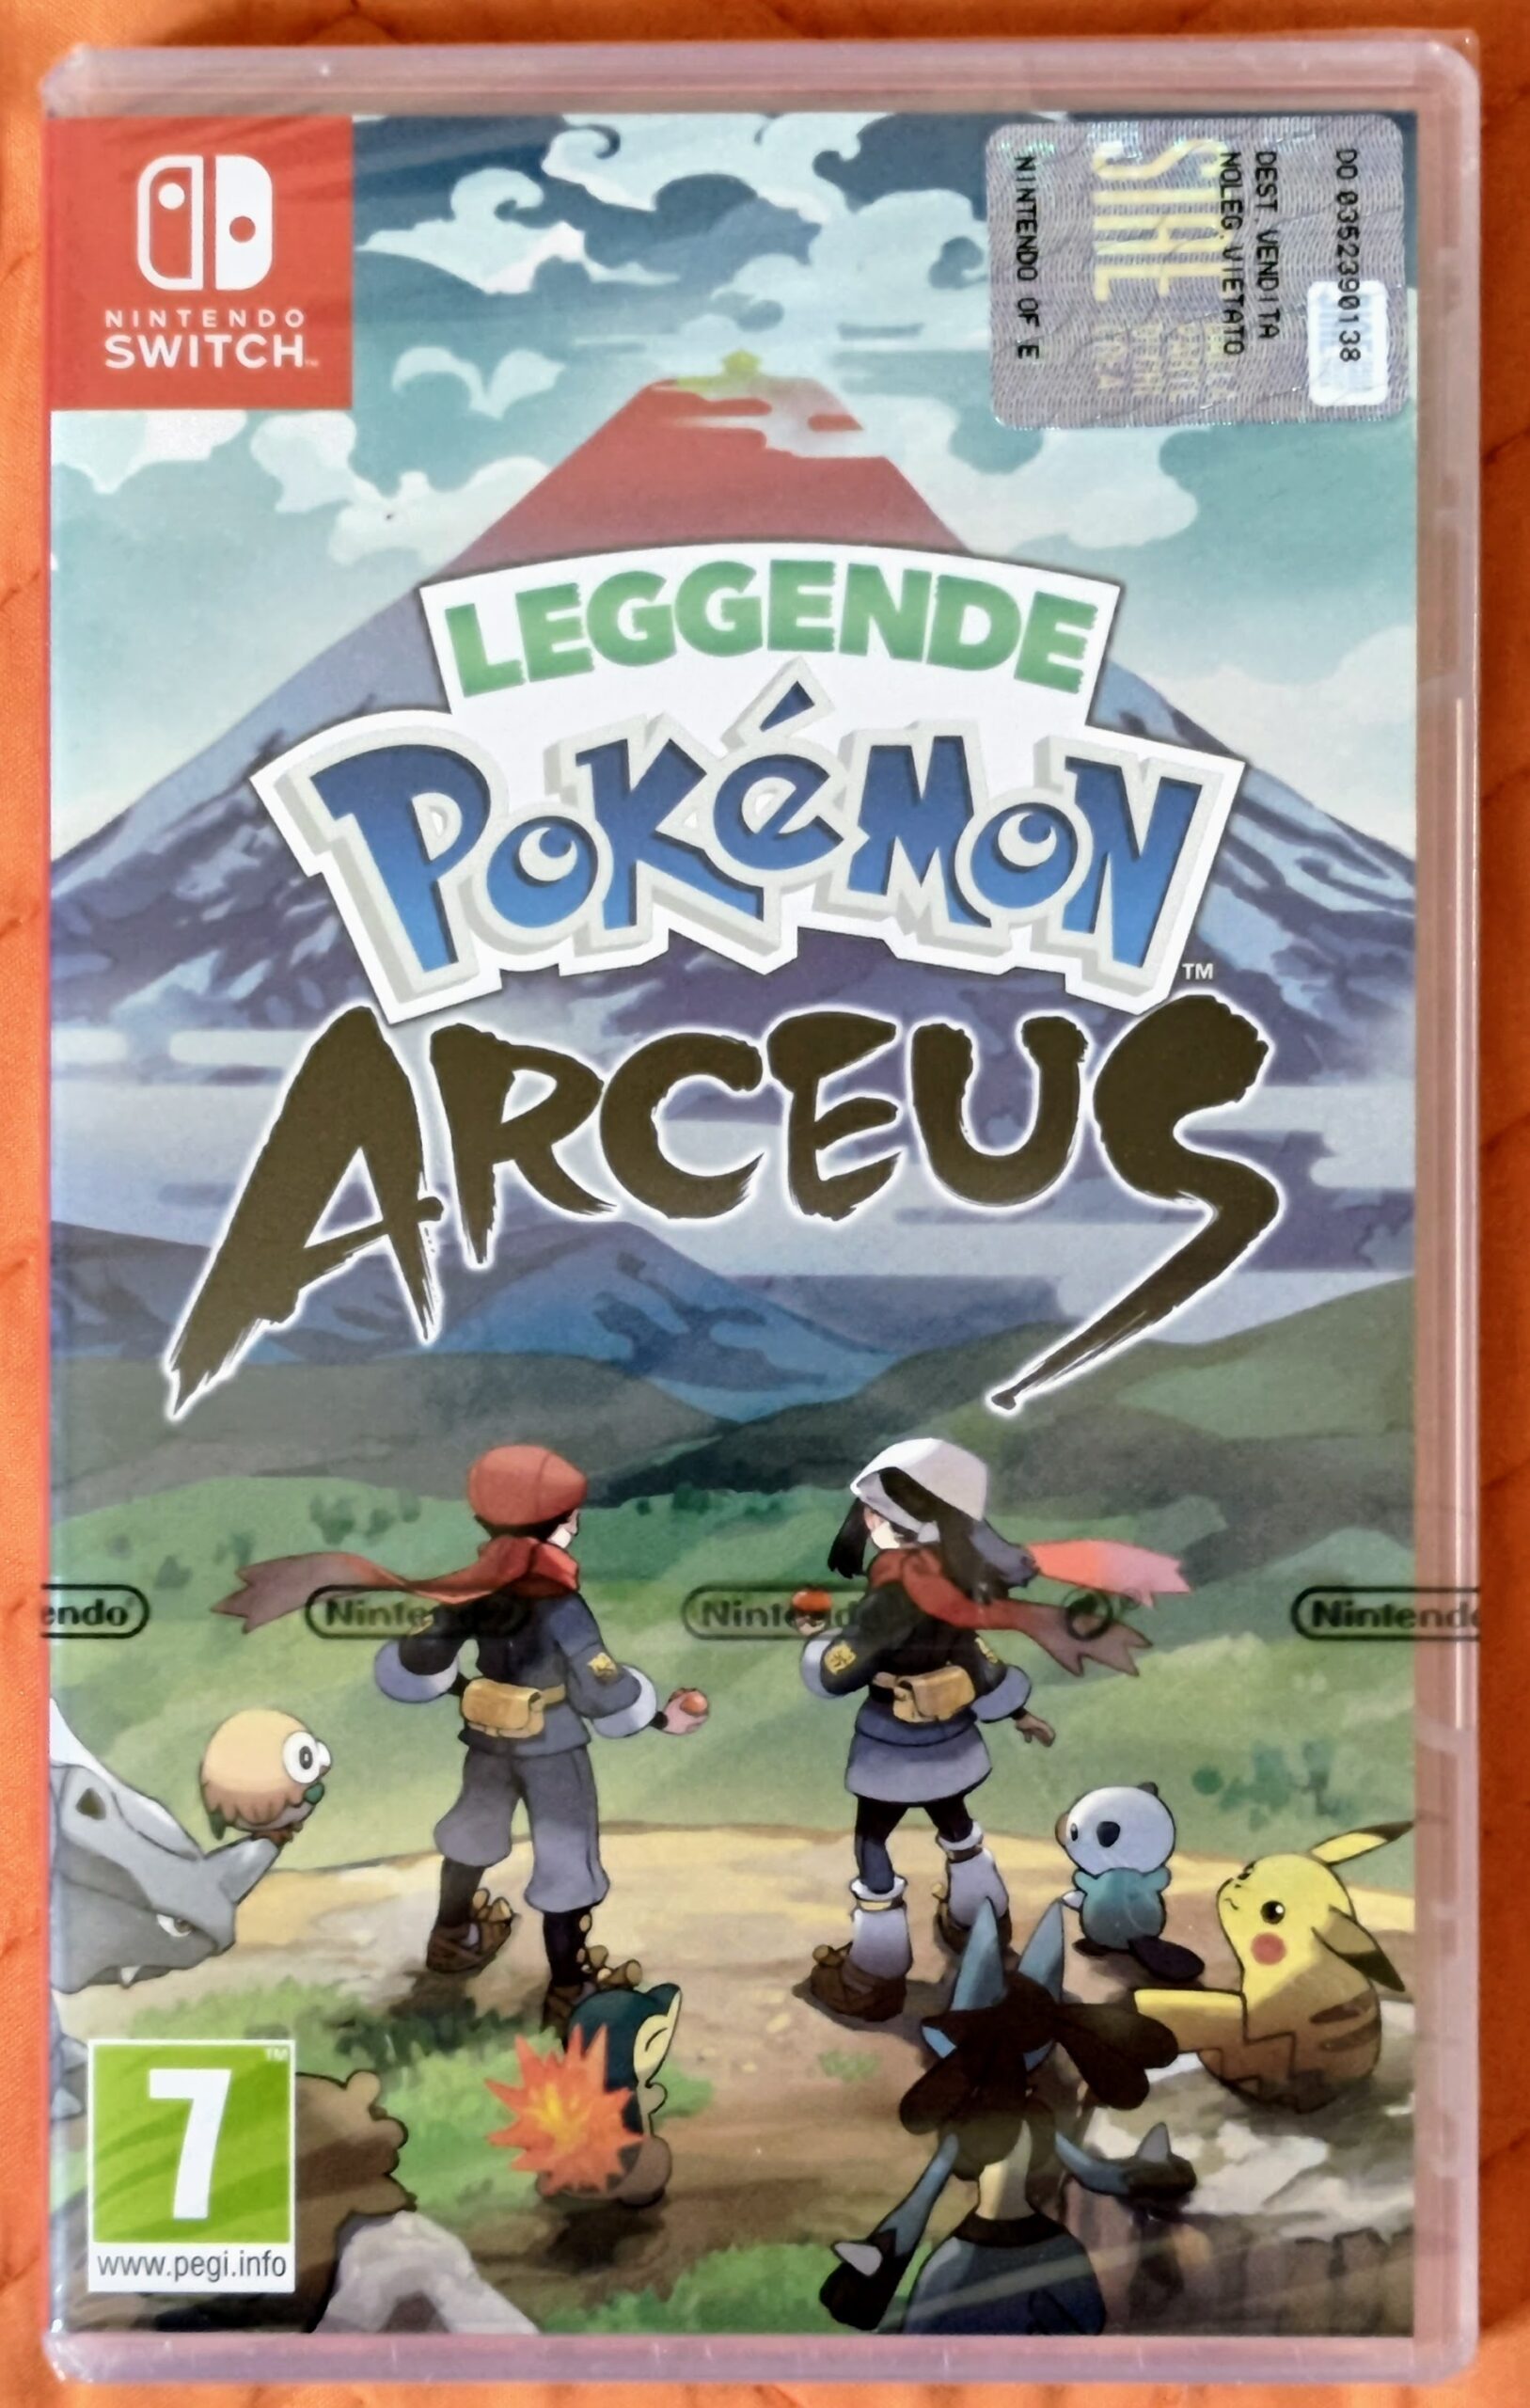 Leggende Pokémon Arceus, rivelato il peso del gioco su Switch